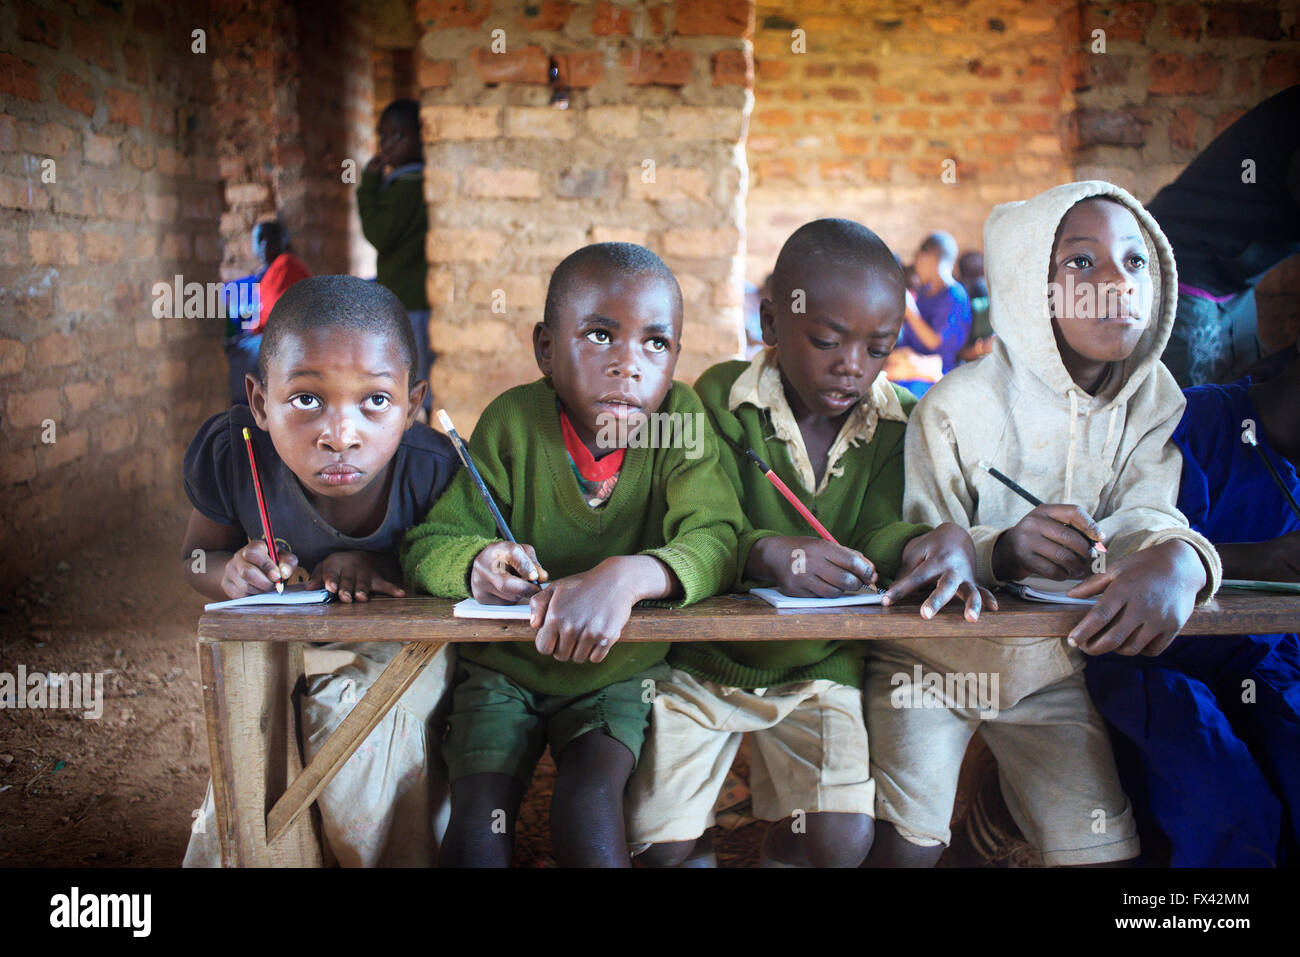 Groupe d'enfants dans les petites localités rurales école ougandaise s'asseoir sur un banc et l'étude en cours d'examens blackboard Banque D'Images